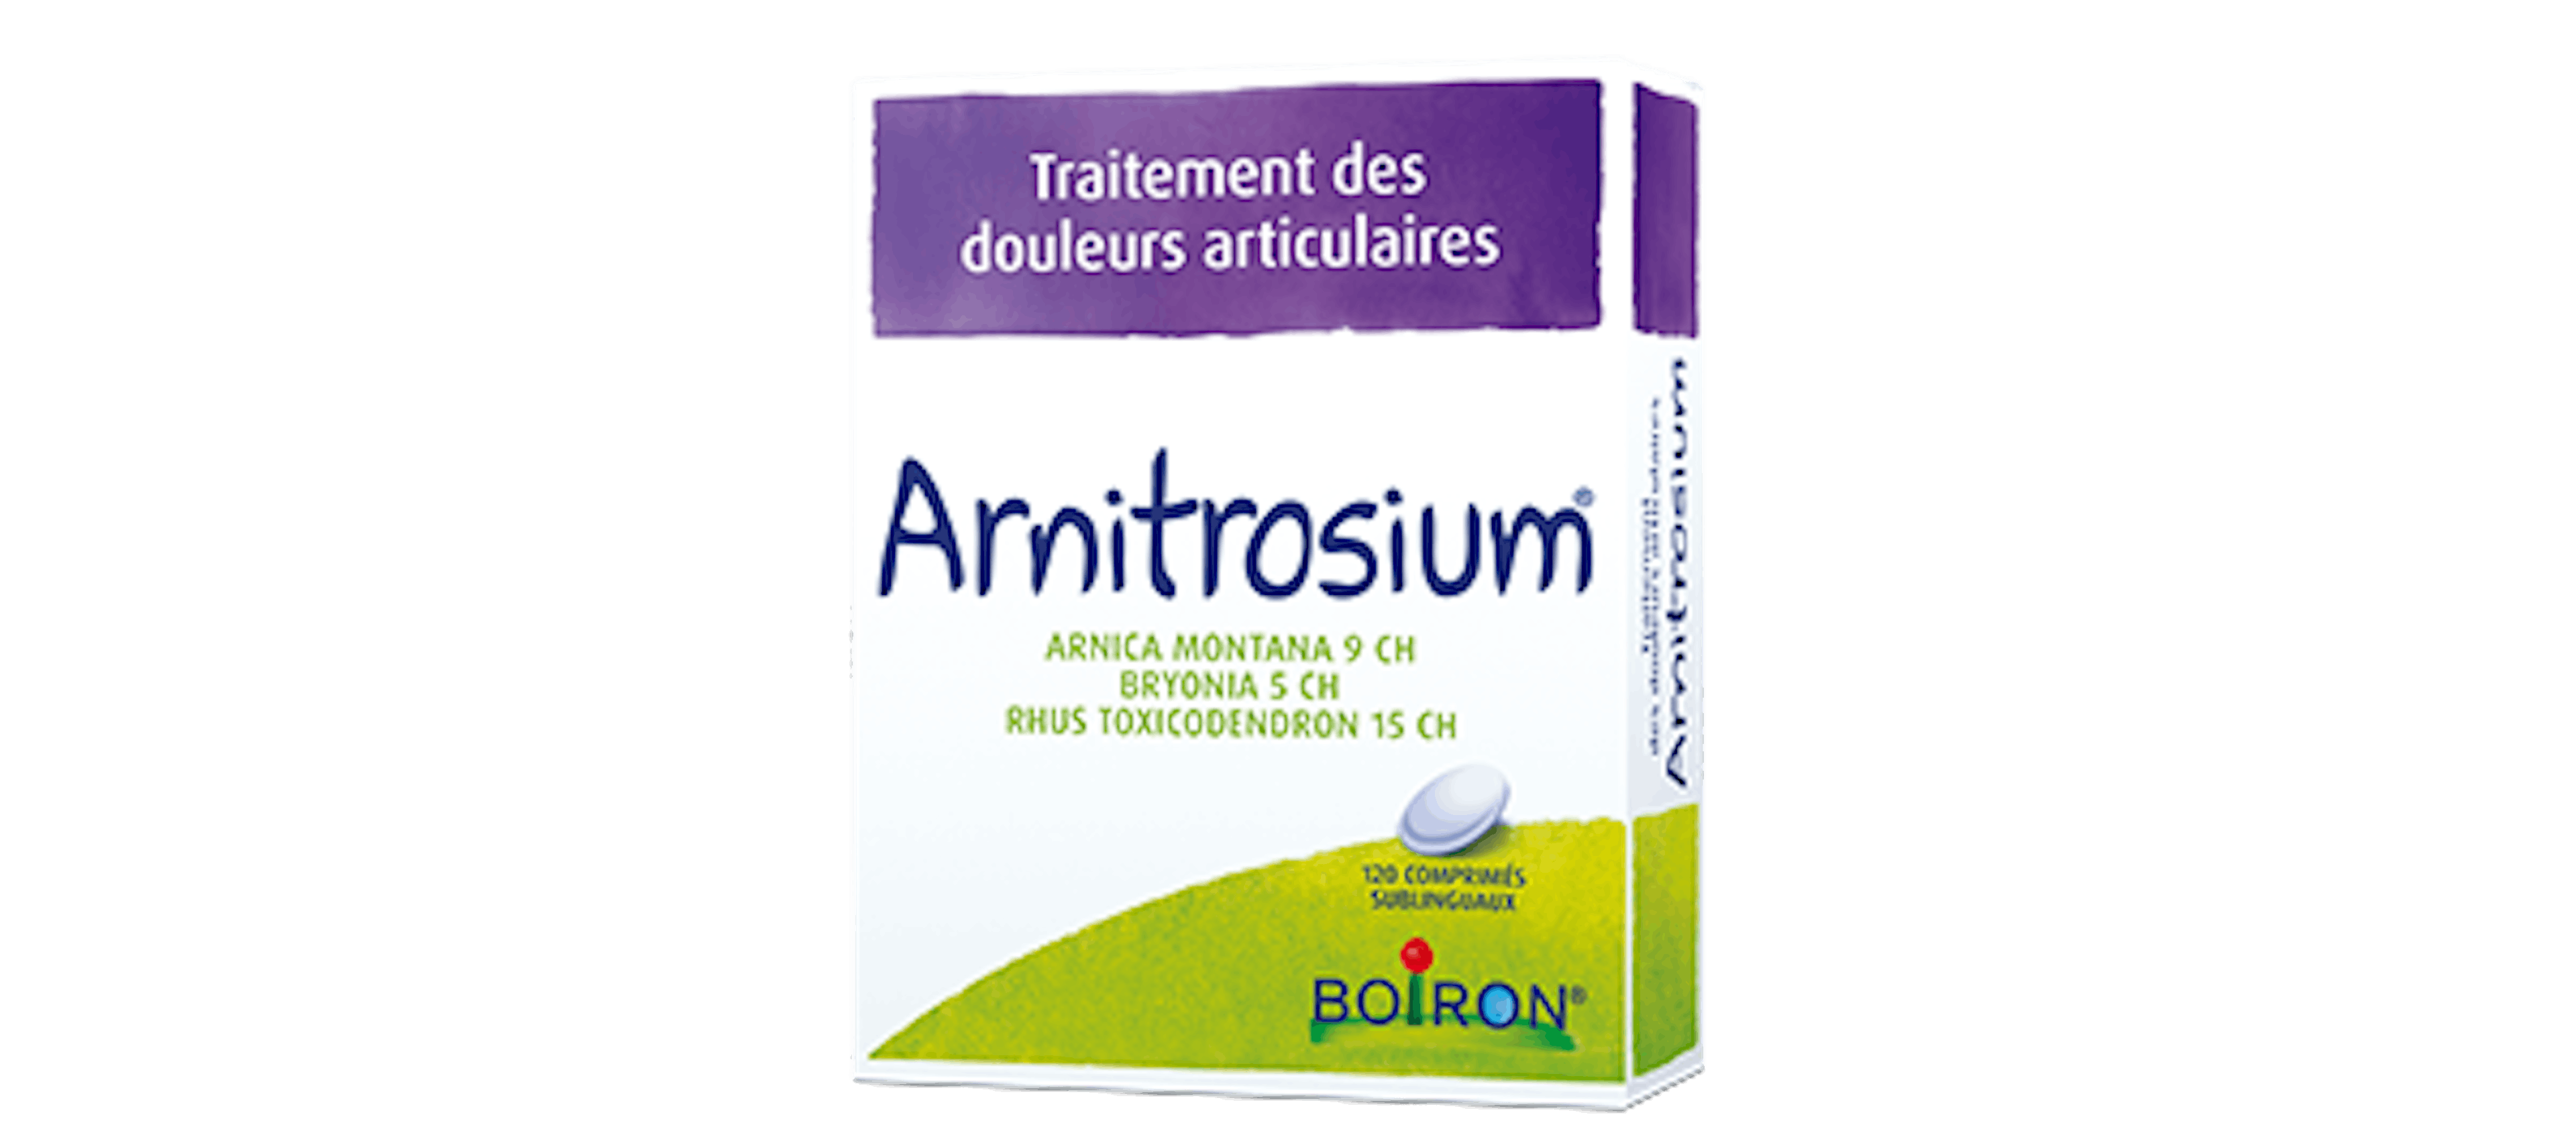 Homéopathie douleurs articulaires - Arnitrosium® Boiron